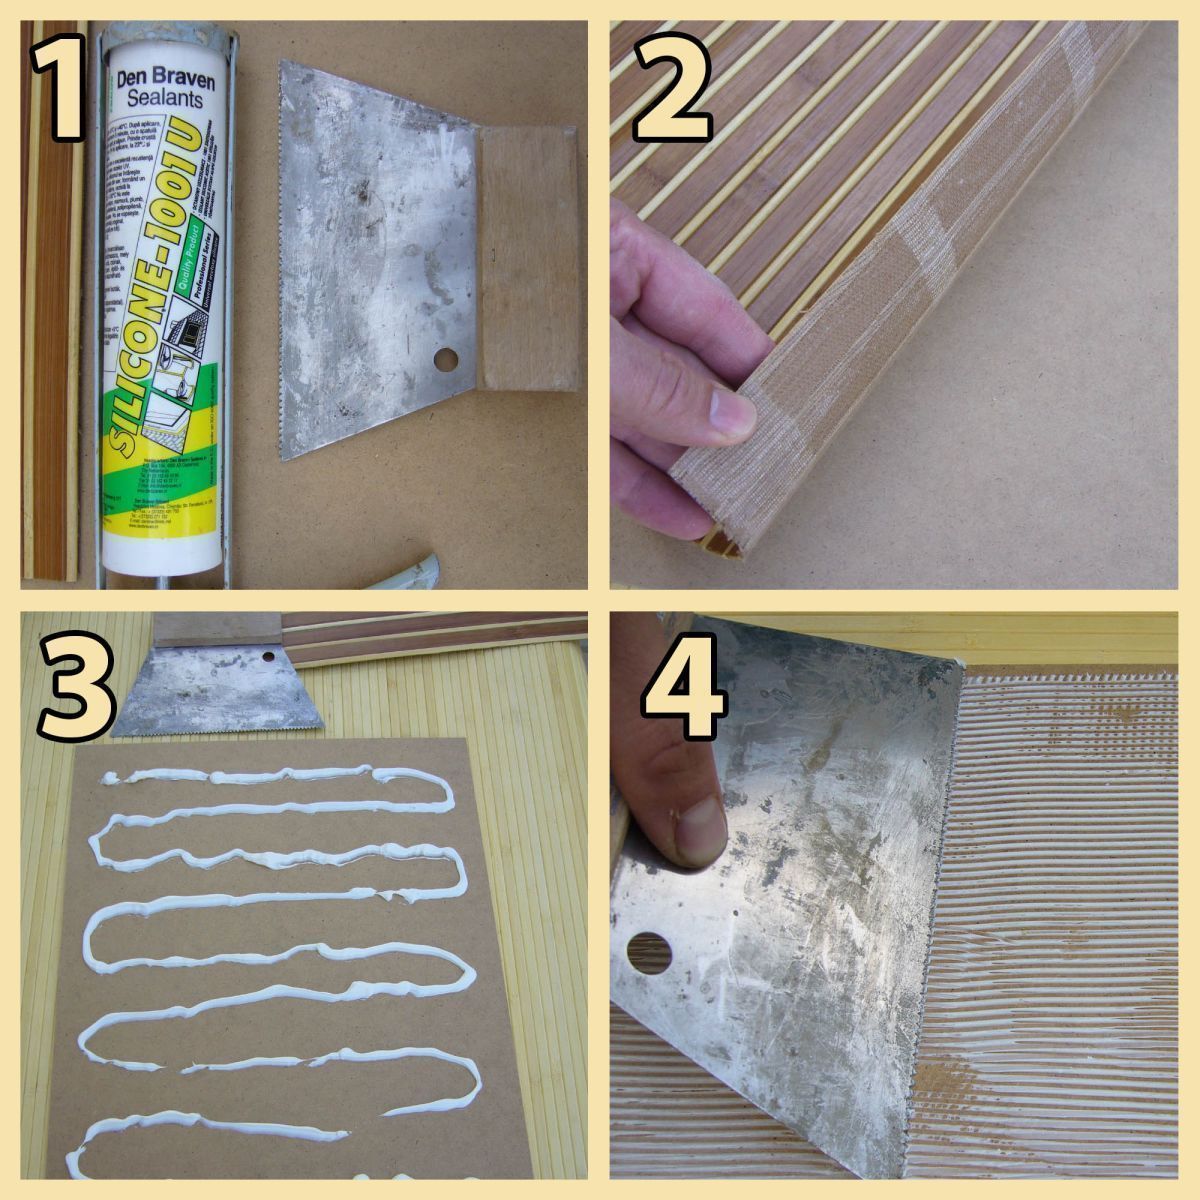 Cree paneles de pared decorativos con paneles de pared de bambú. Los rollos de bambú son fáciles de pegar, se pueden cortar y pegar, incluso puedes hacer inserciones para puertas en casa.